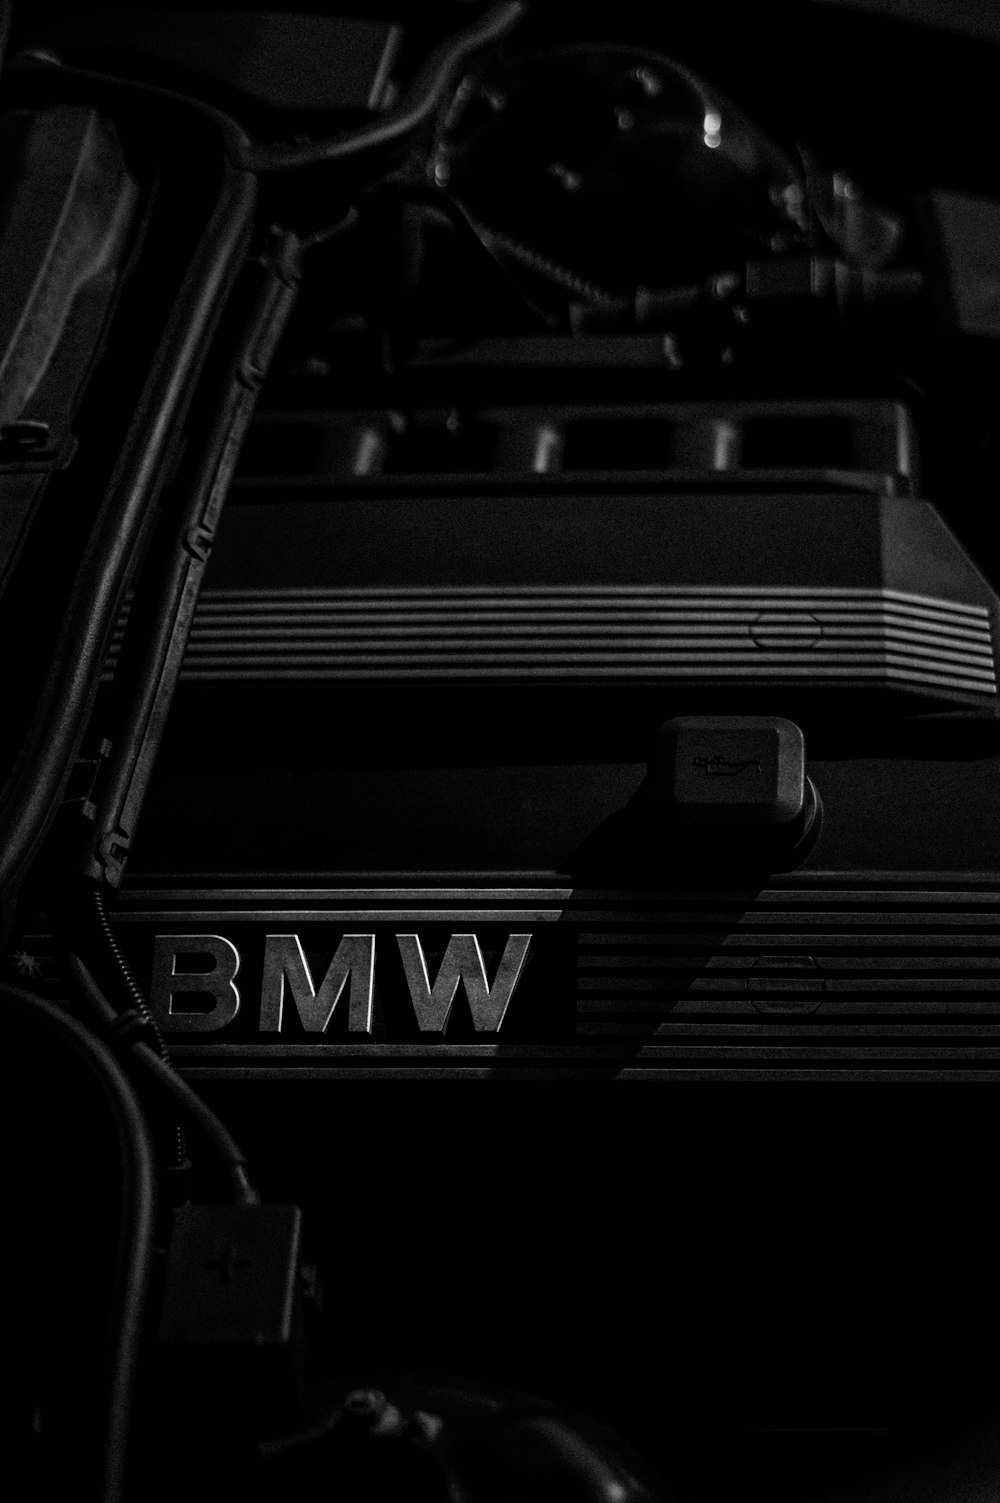 BMW 엠블럼의 그레이스케일 사진